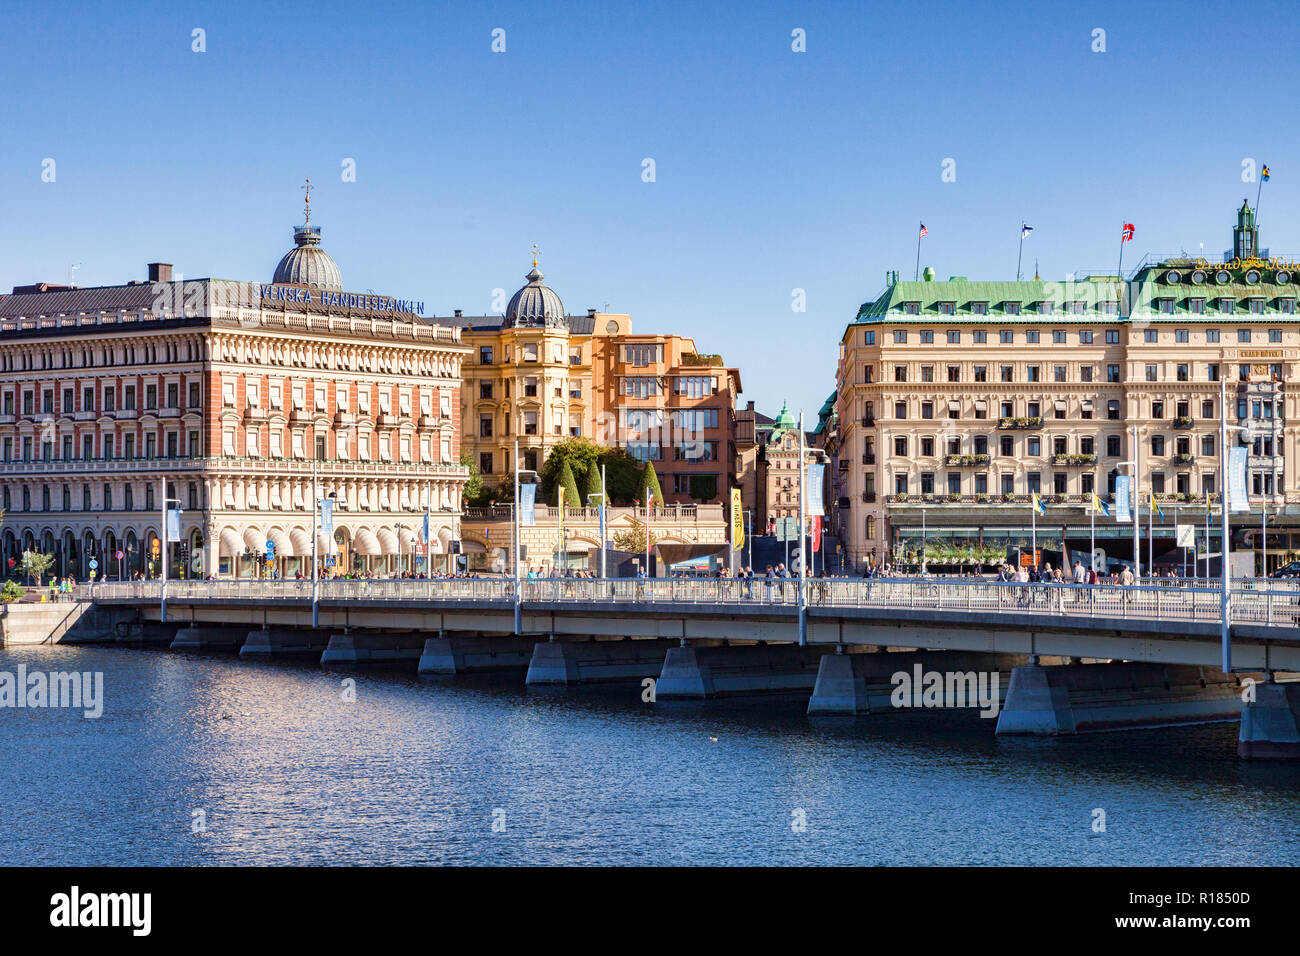 16 Septembre 2018 : Stockholm, Suède - Grands bâtiments au bord de l'eau sur un beau week-end ensoleillé. Banque D'Images